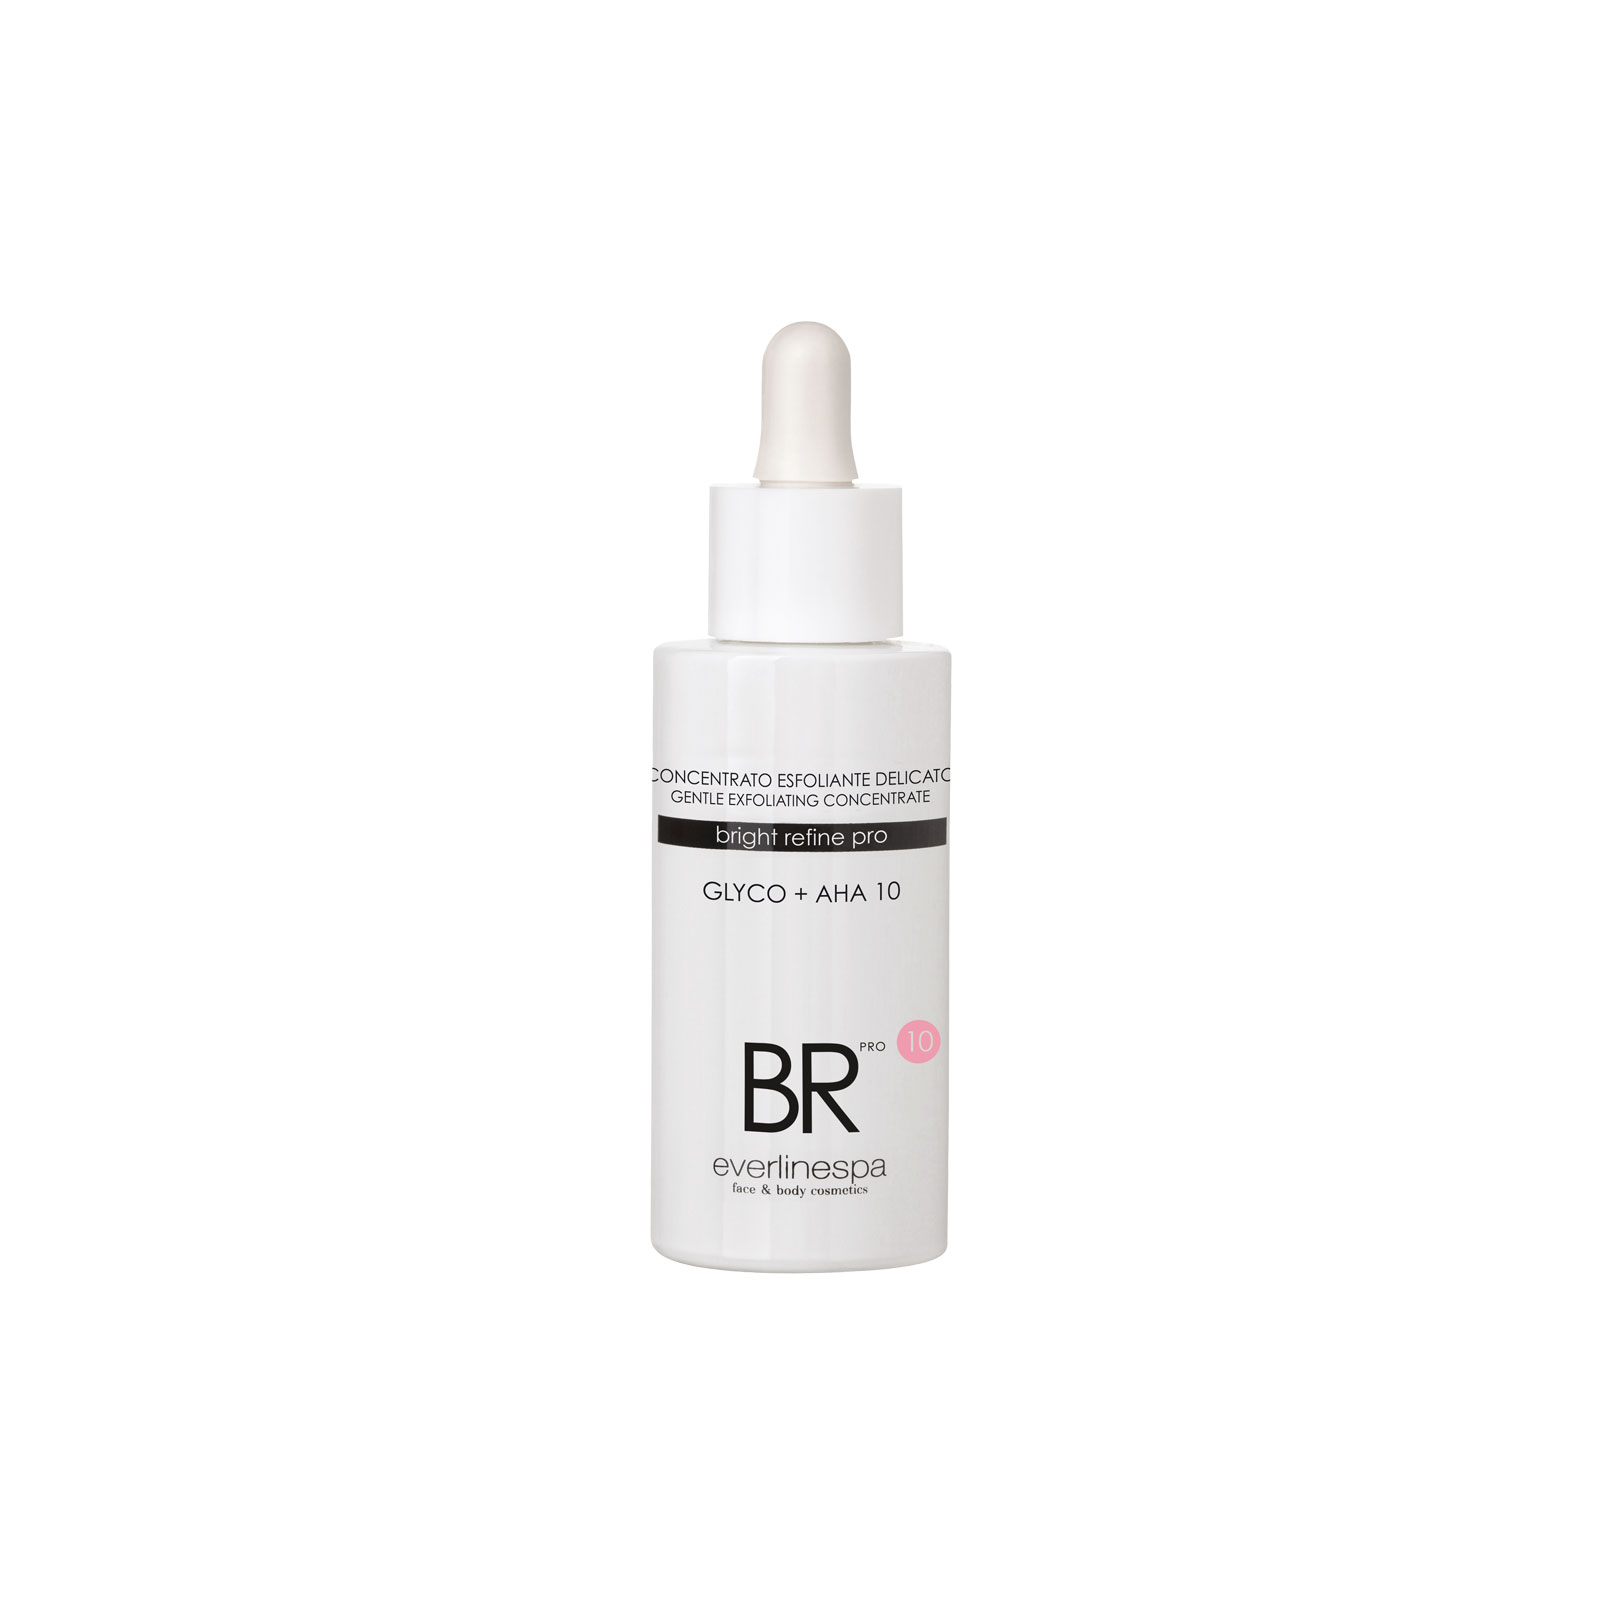 BR_concentrato-exfoliating-delicato- 50 ml.jpg